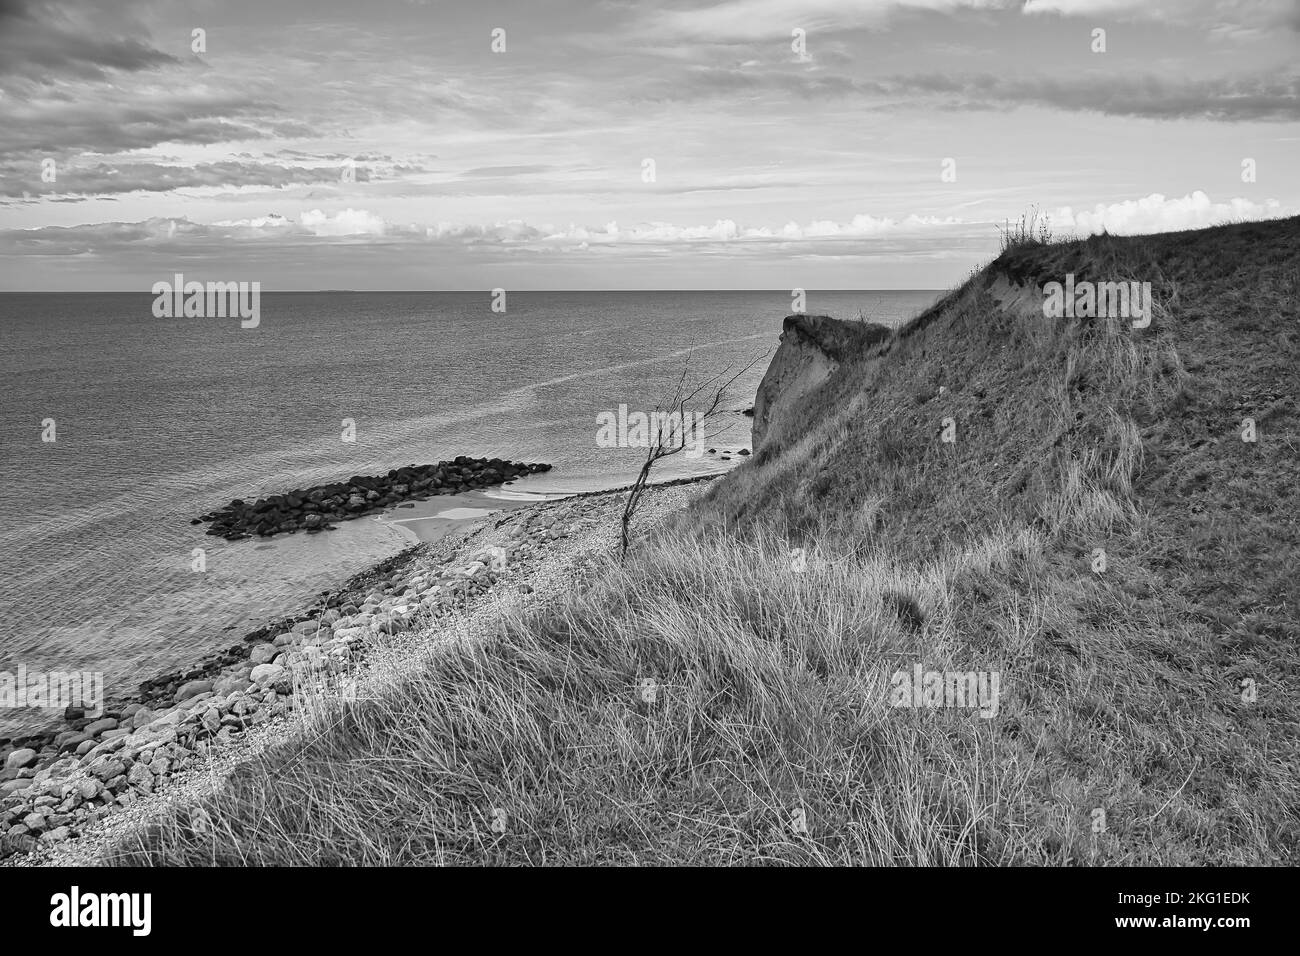 Hundested, Dinamarca en el acantilado con vistas al mar en blanco y negro. Costa del mar Báltico, pradera con césped, playa. Nubes en el horizonte. Horizontal pho Foto de stock